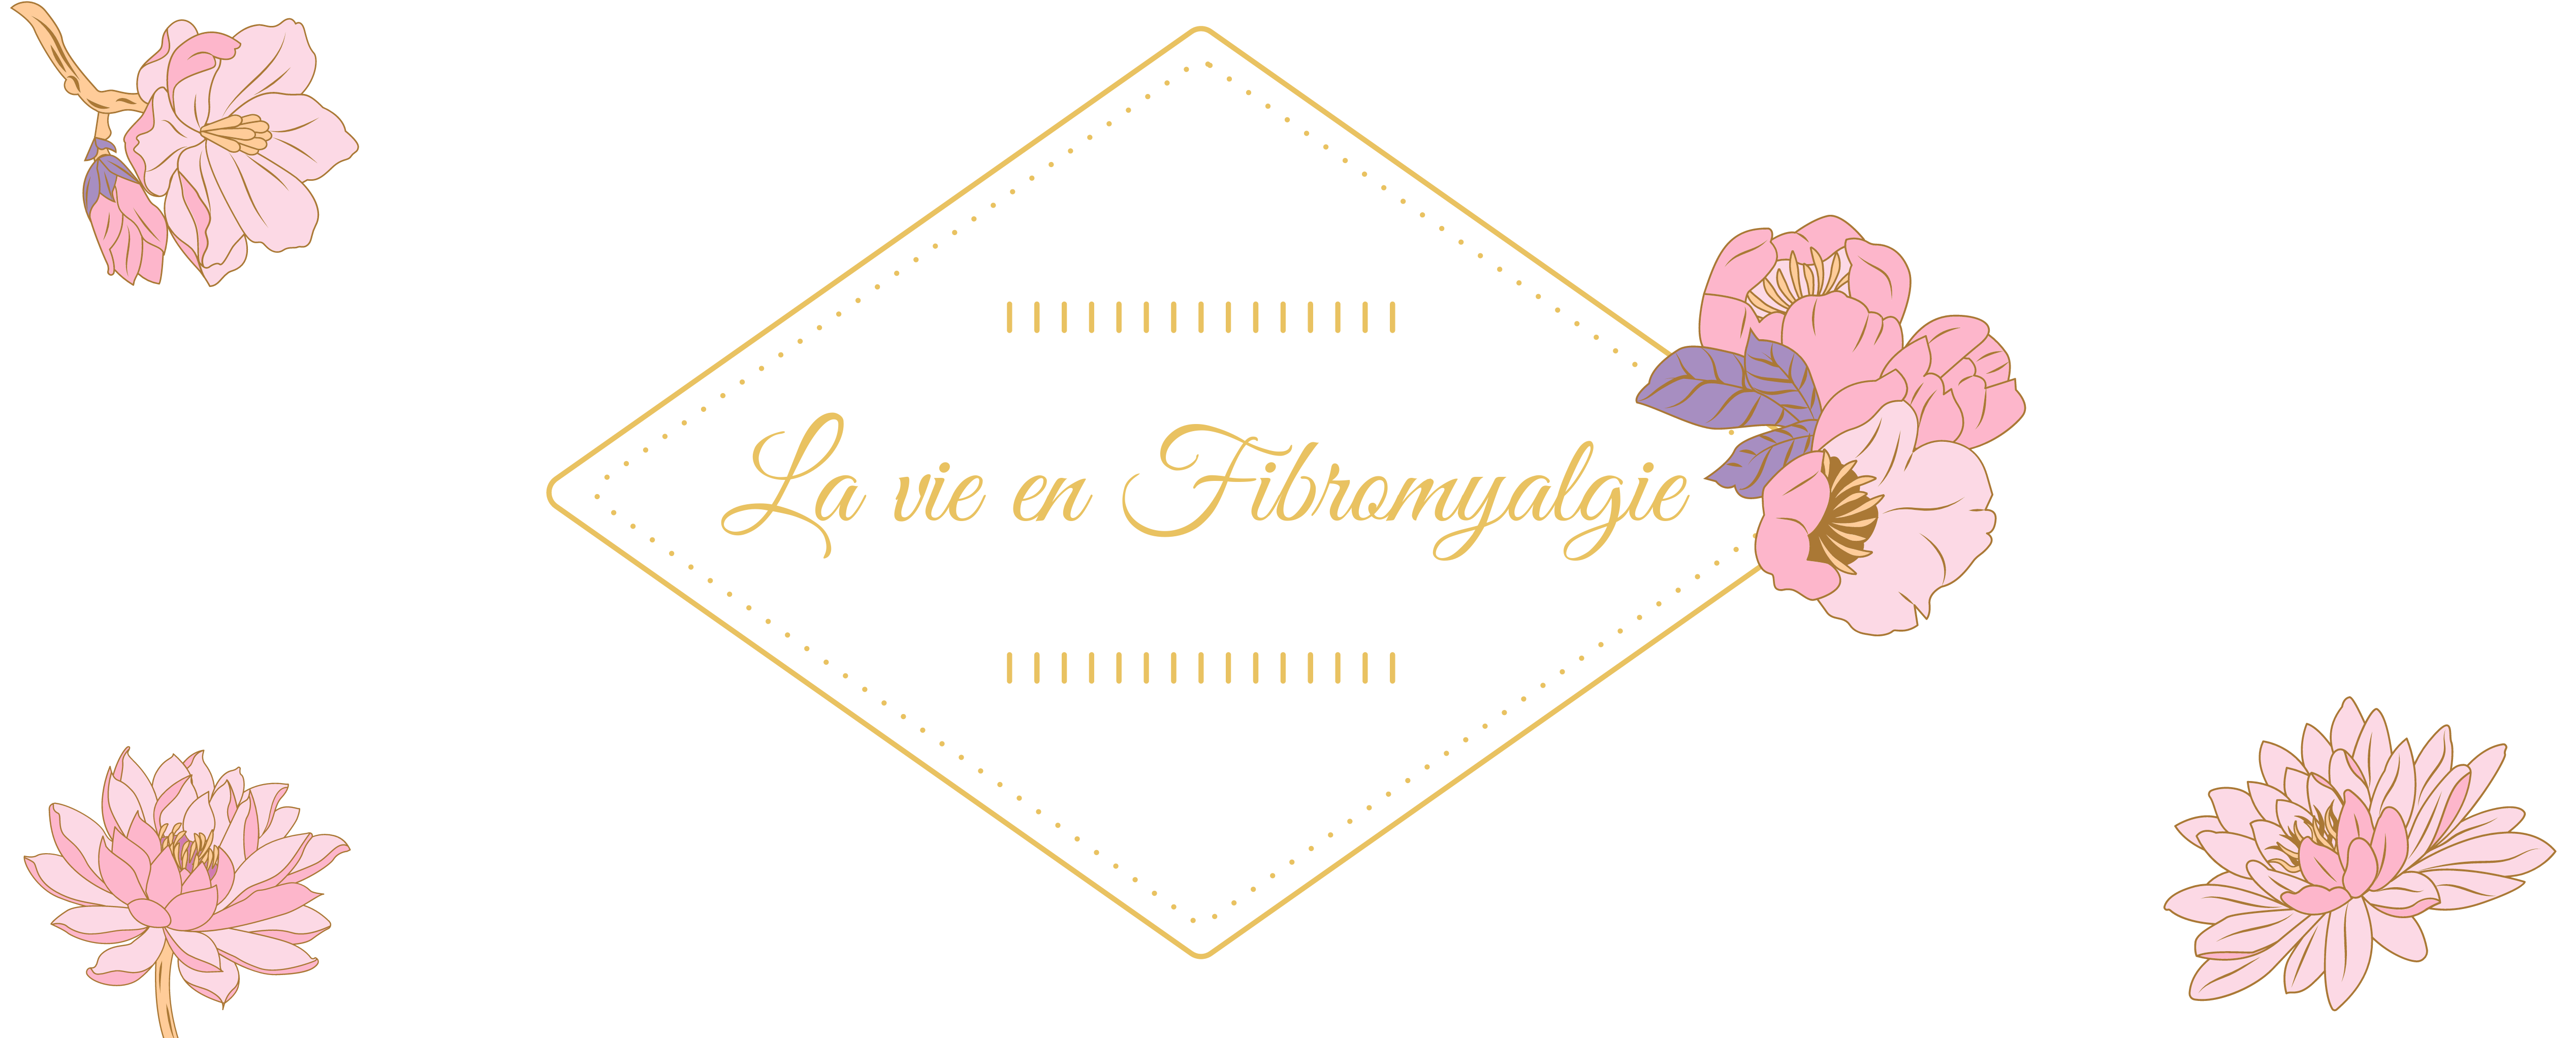 La Vie en Fibromyalgie